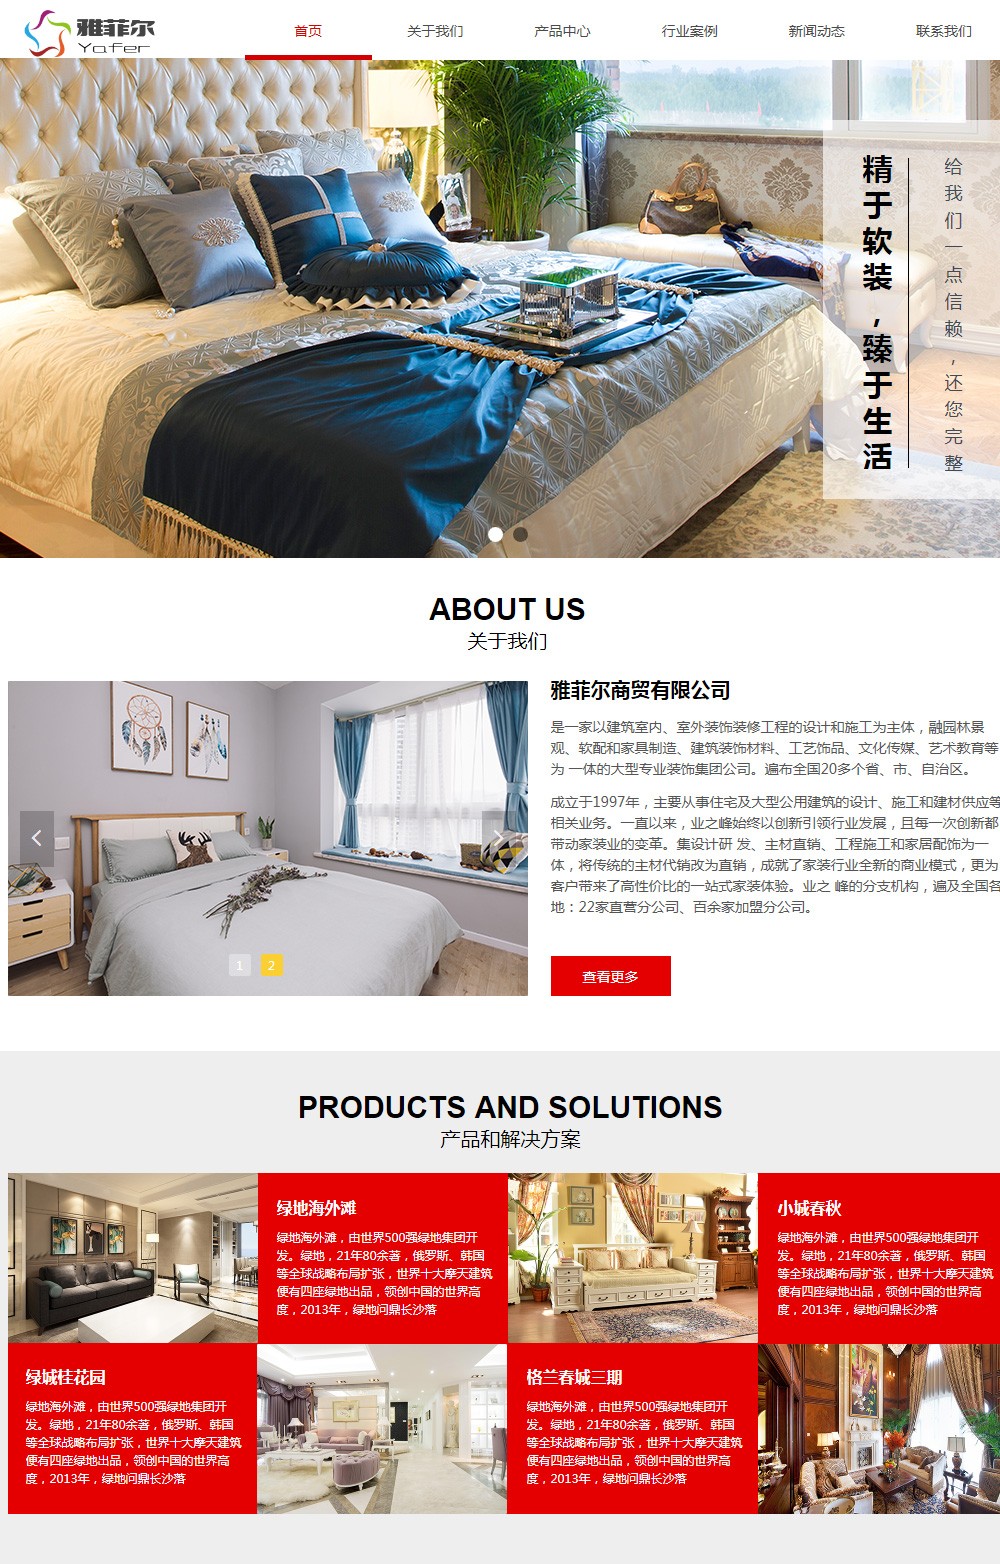 西安网站建设公司